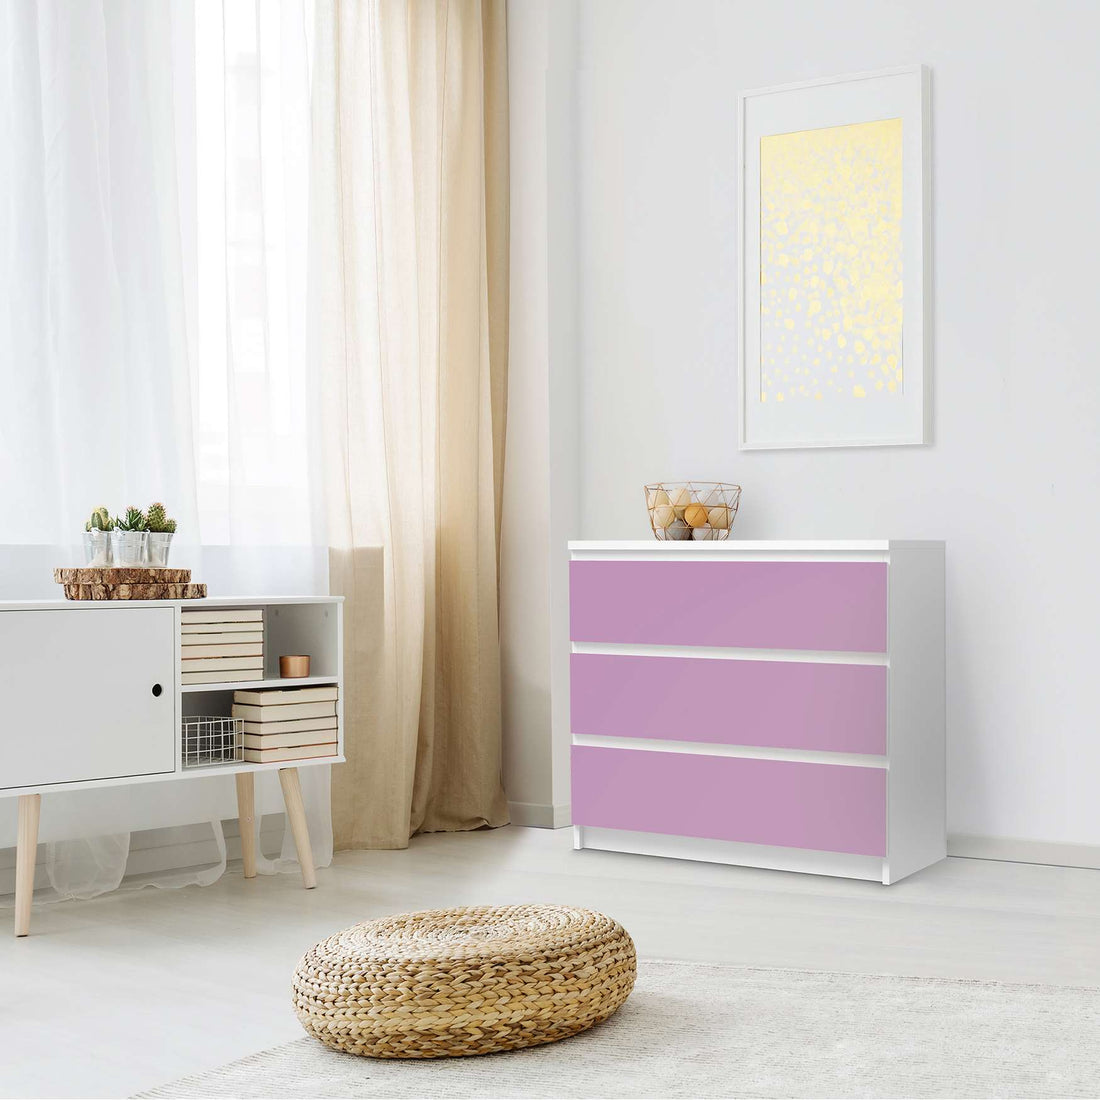 Klebefolie für Möbel Flieder Light - IKEA Malm Kommode 3 Schubladen - Schlafzimmer